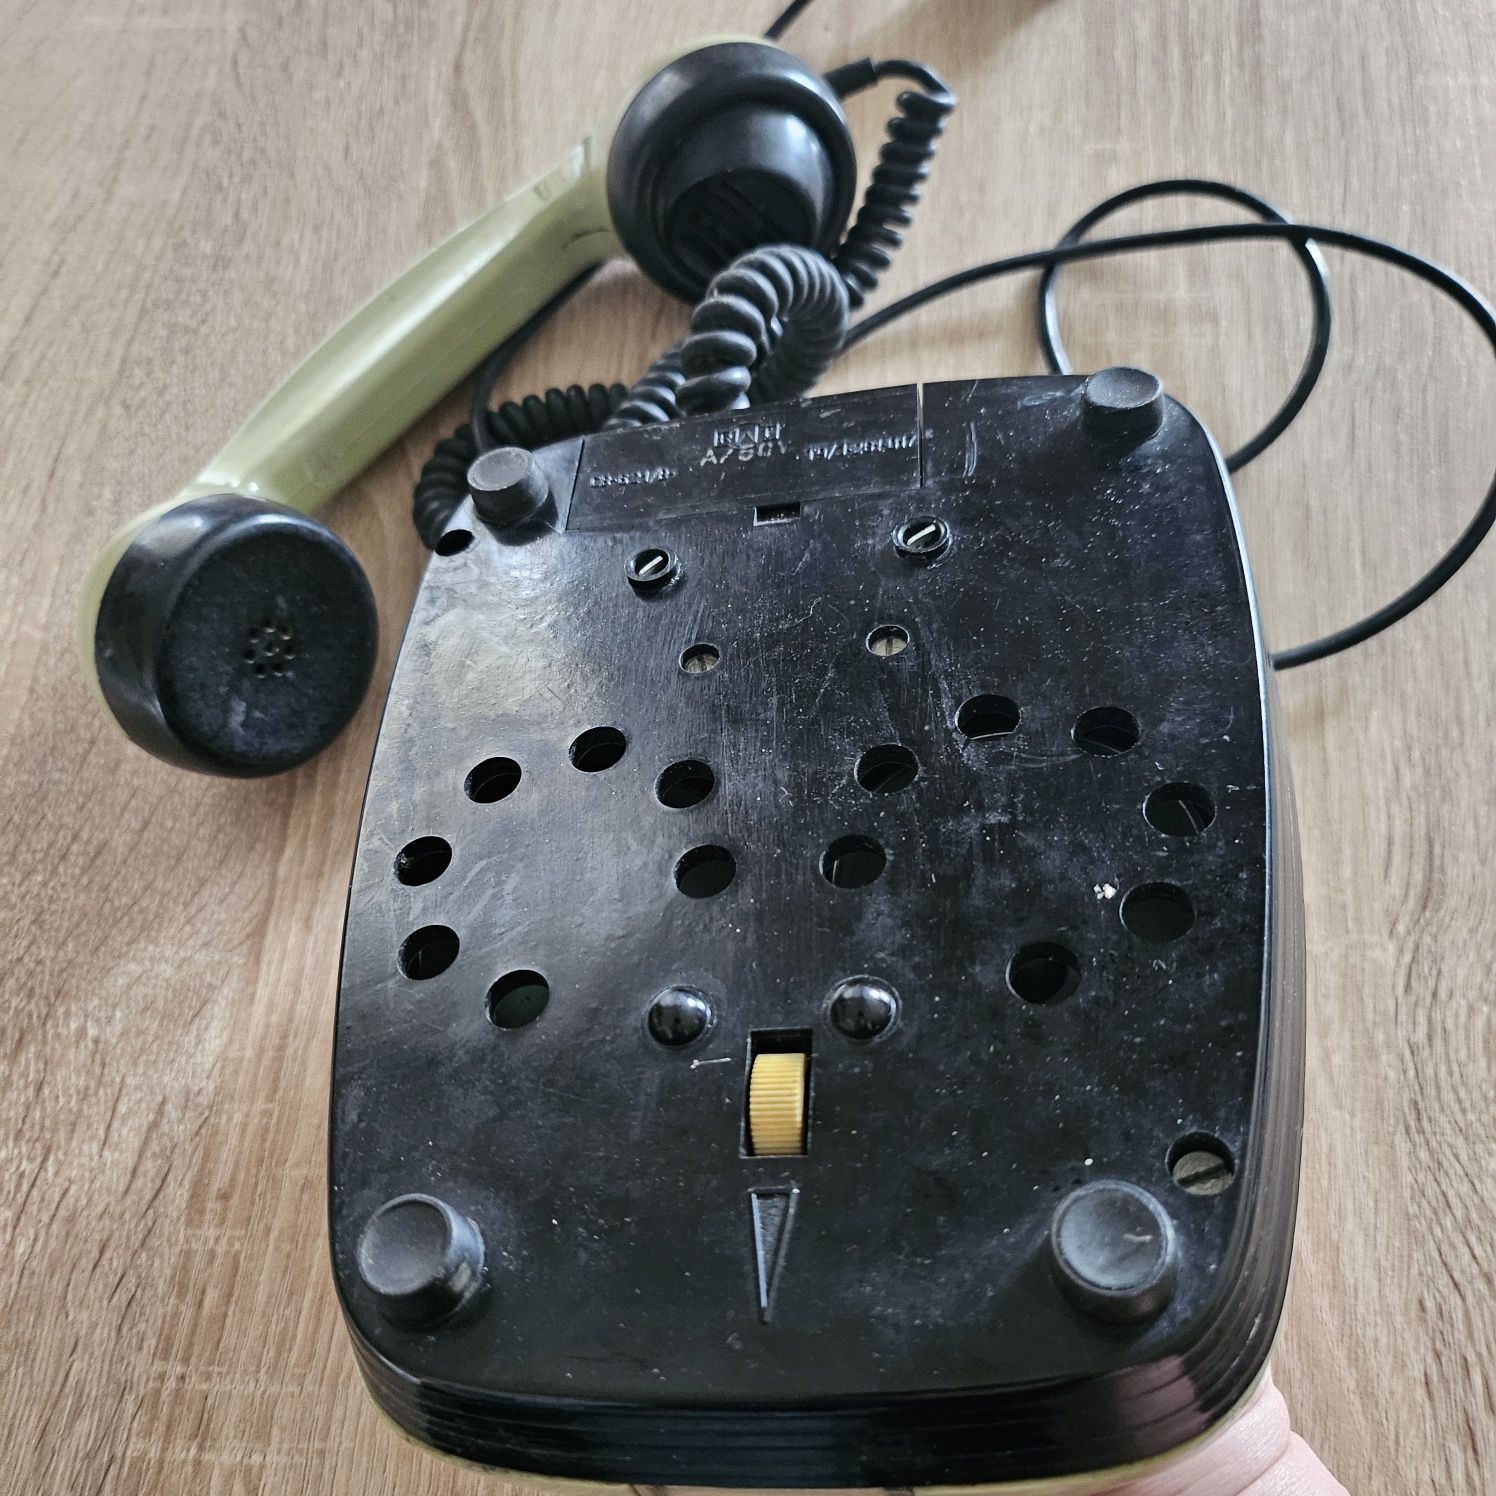 Polski telefon tarczowy Elektrim RWT CB-662
Telefon z czasów PRL